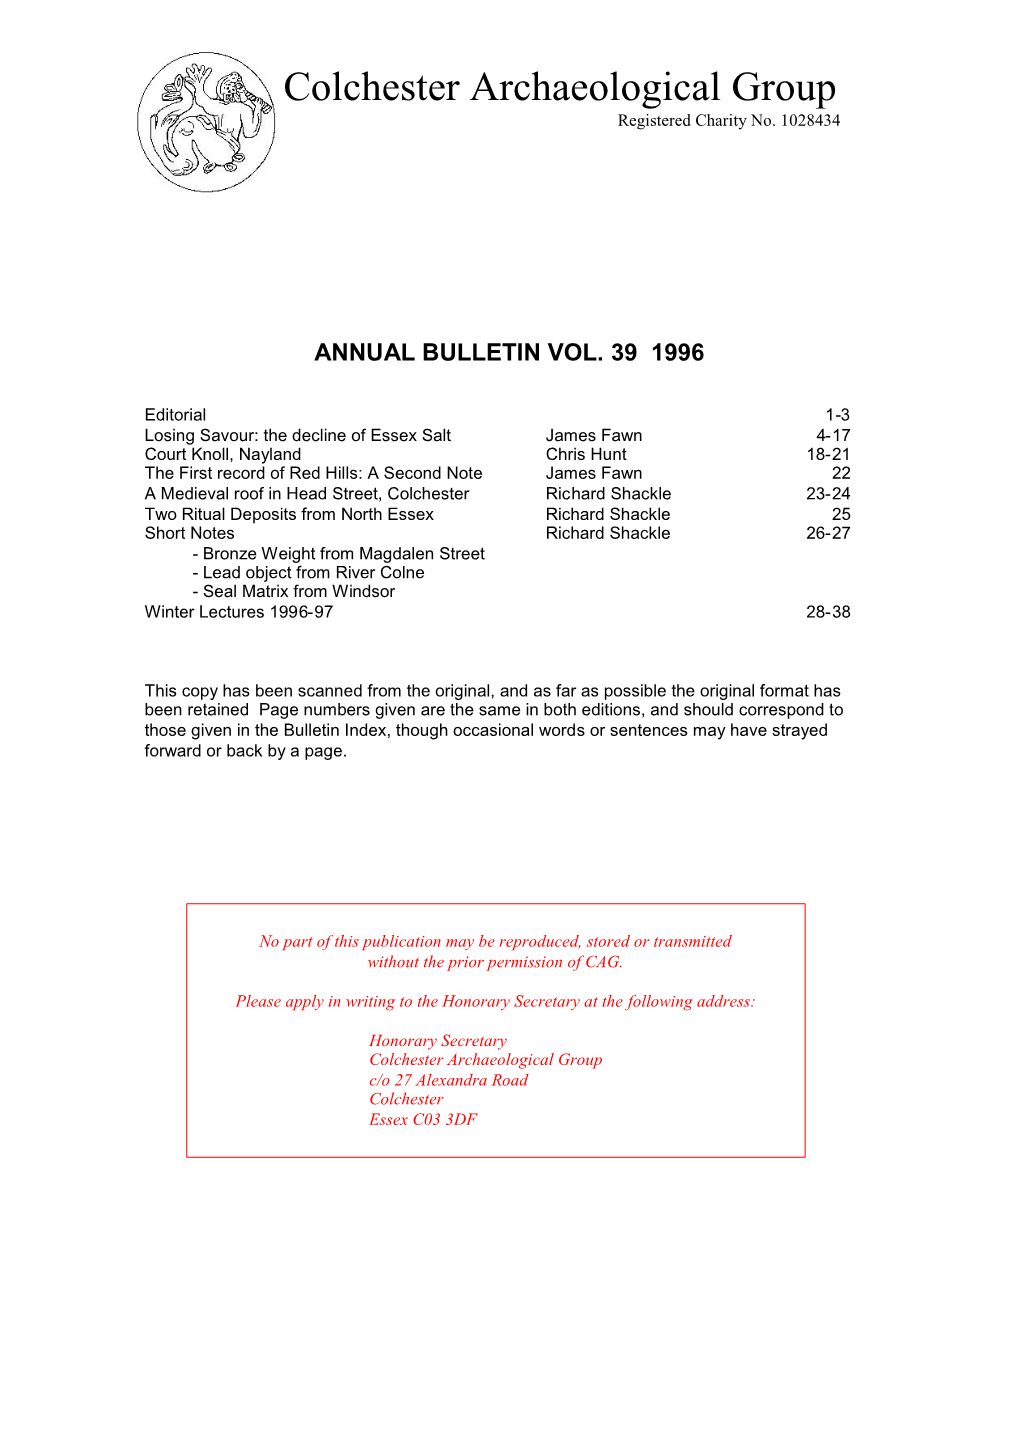 Bulletin 39 1996 Colchester Archaeological Group President: Mr David T-D Clarke